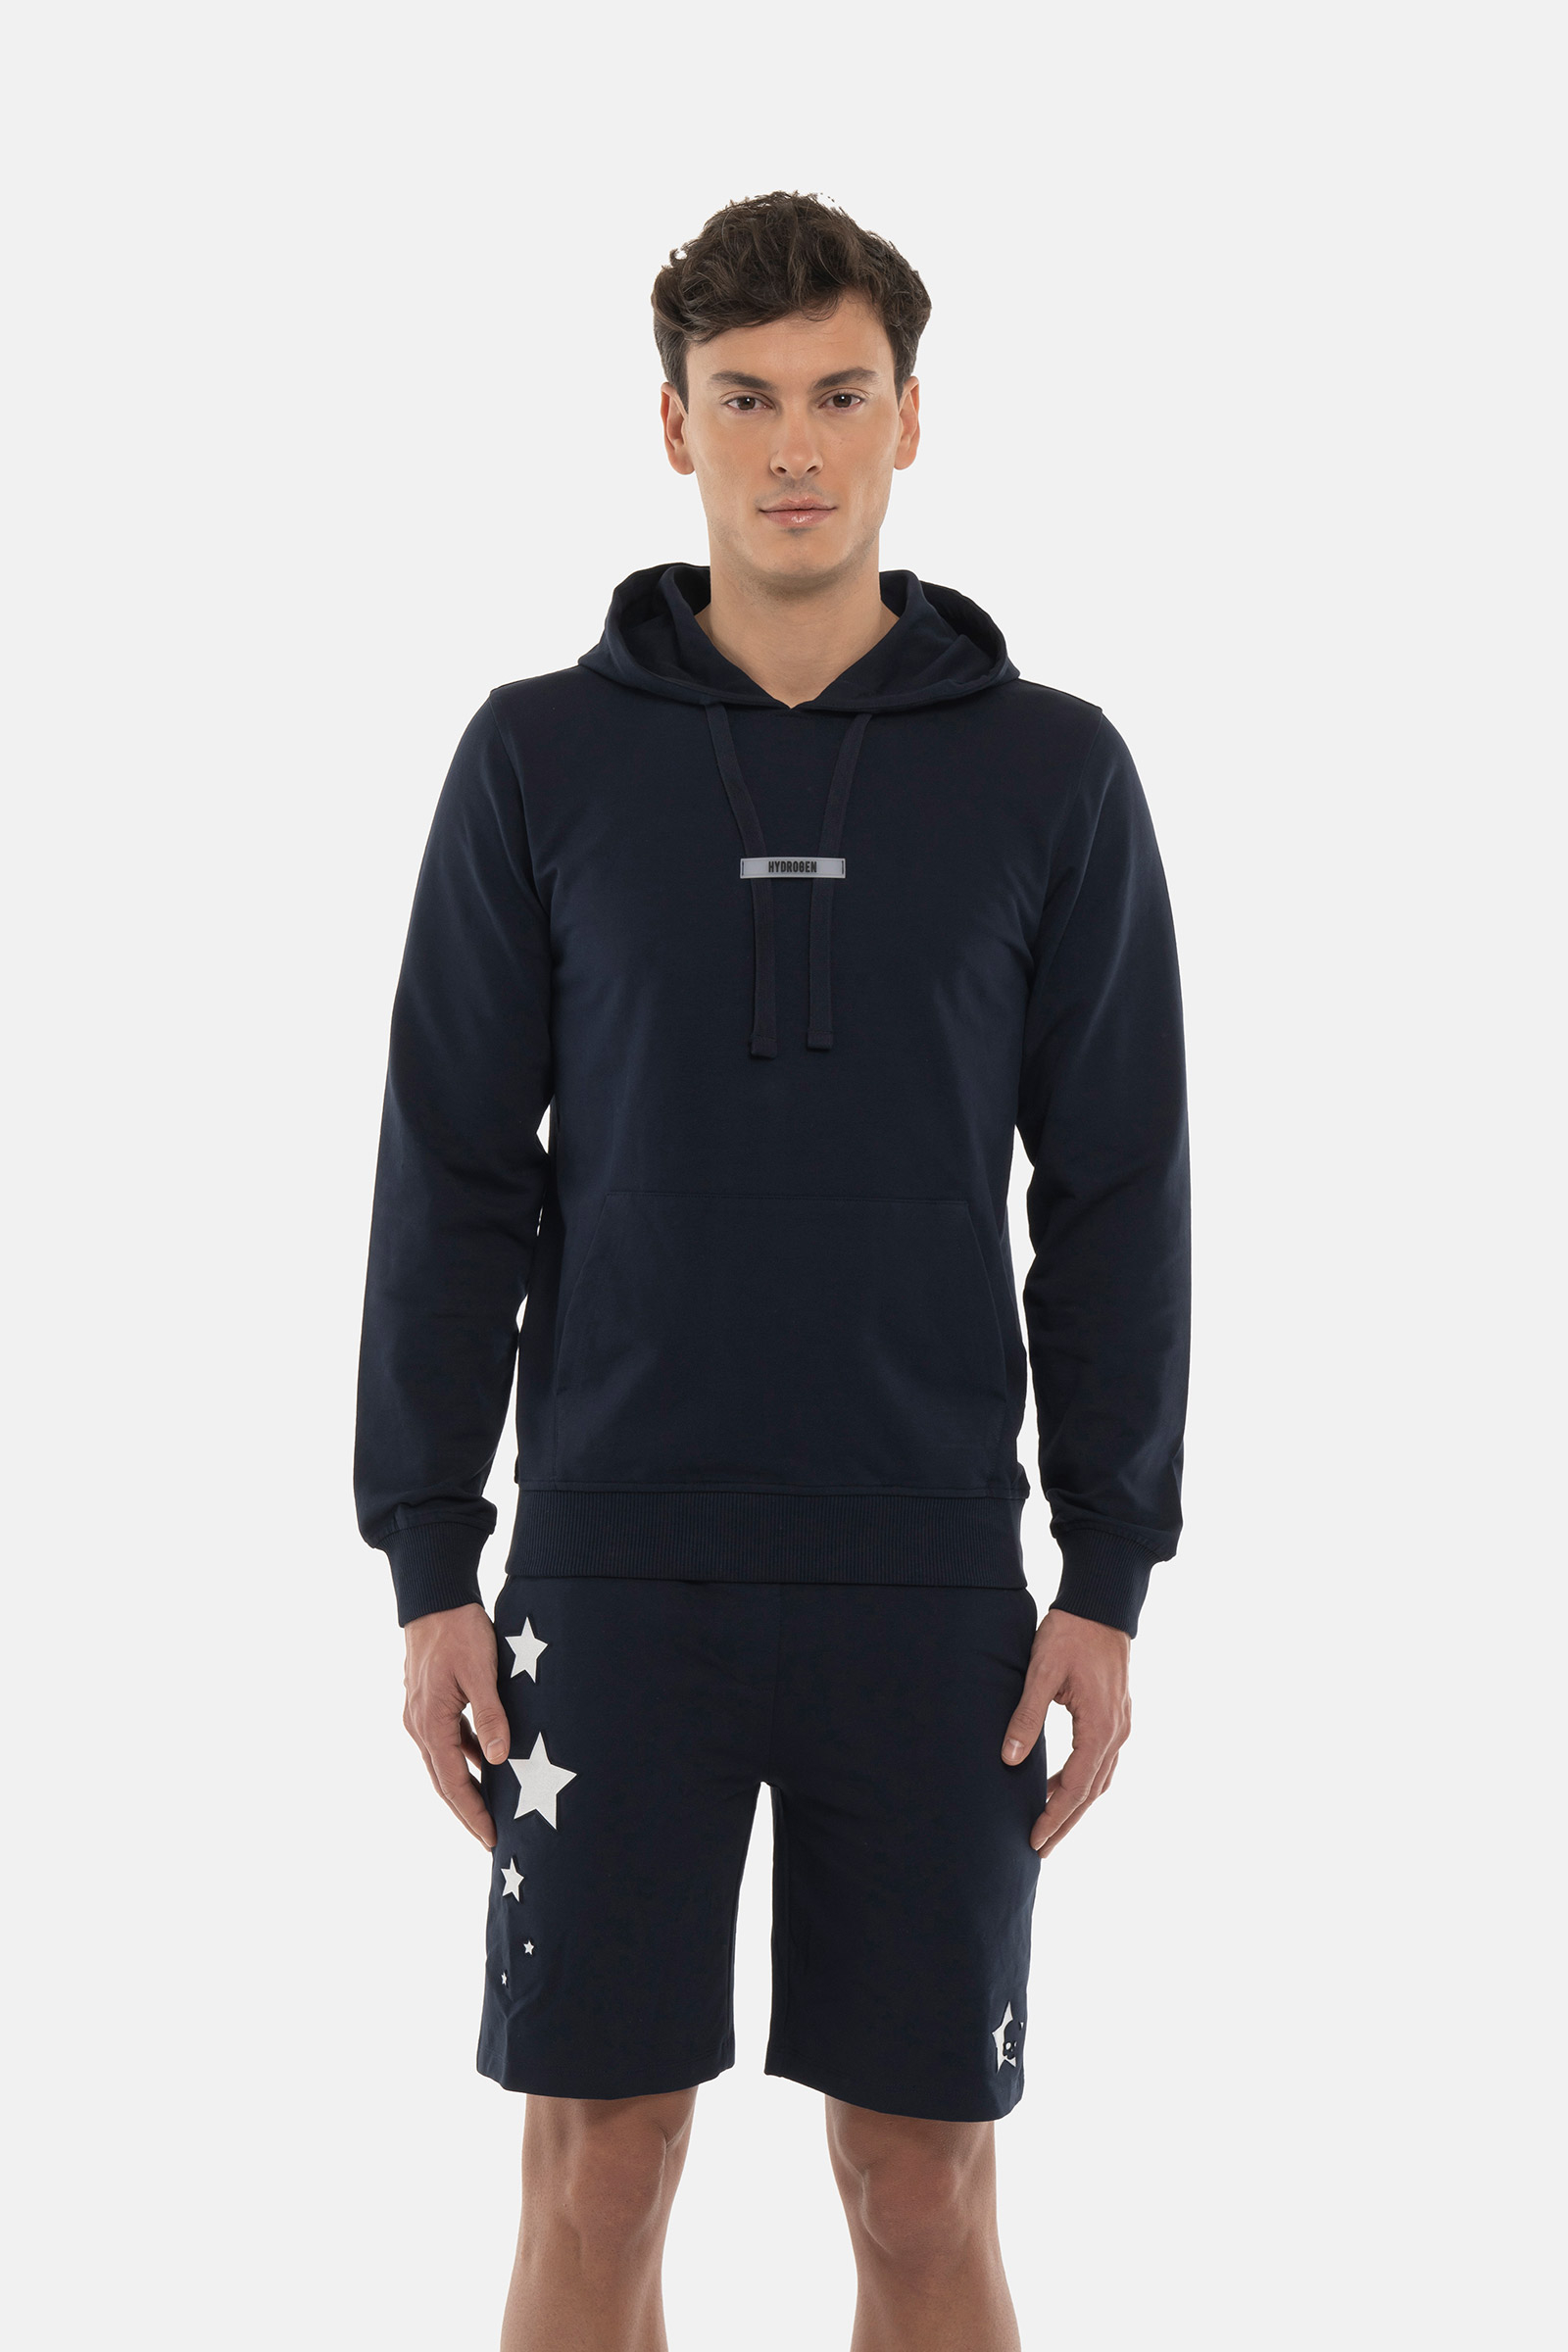 STARS HOODIE - Apparel - Hydrogen - Luxury Sportwear